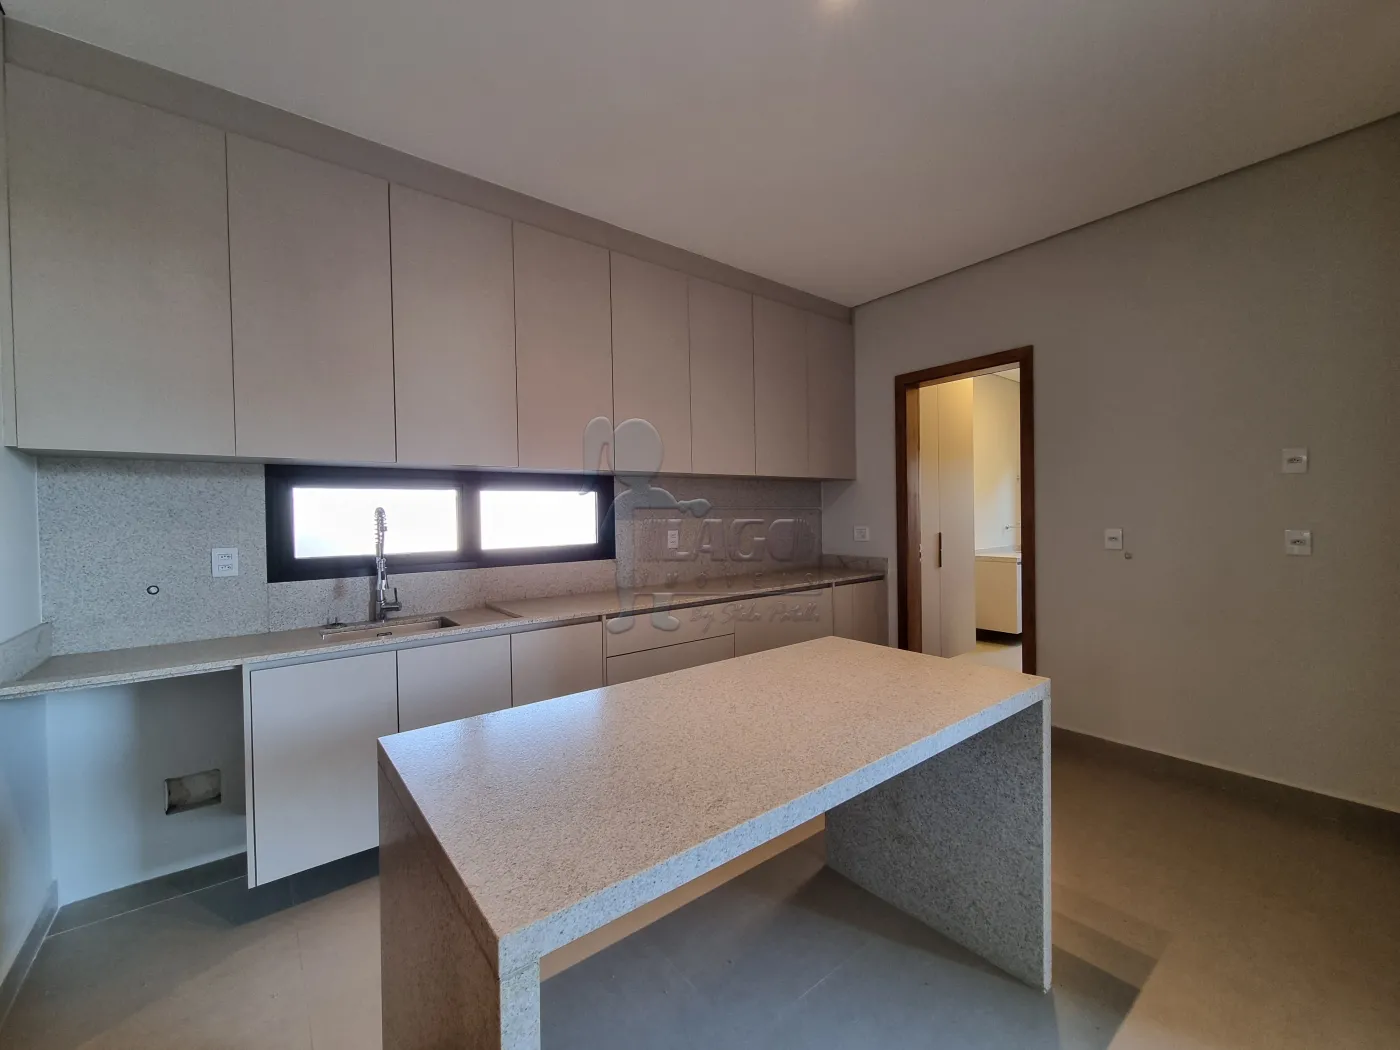 Comprar Casa condomínio / Padrão em Bonfim Paulista R$ 2.600.000,00 - Foto 8